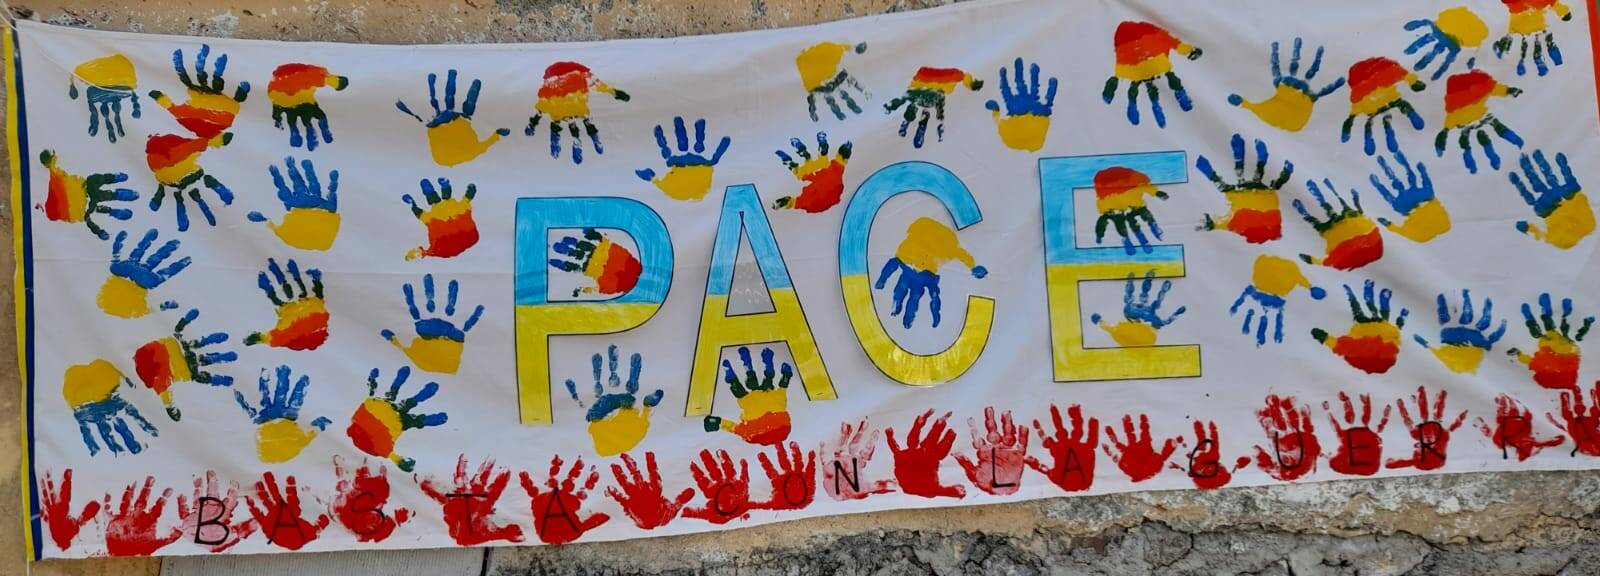 I manifesti con cui i bambini delle scuole spezzine chiedono la pace